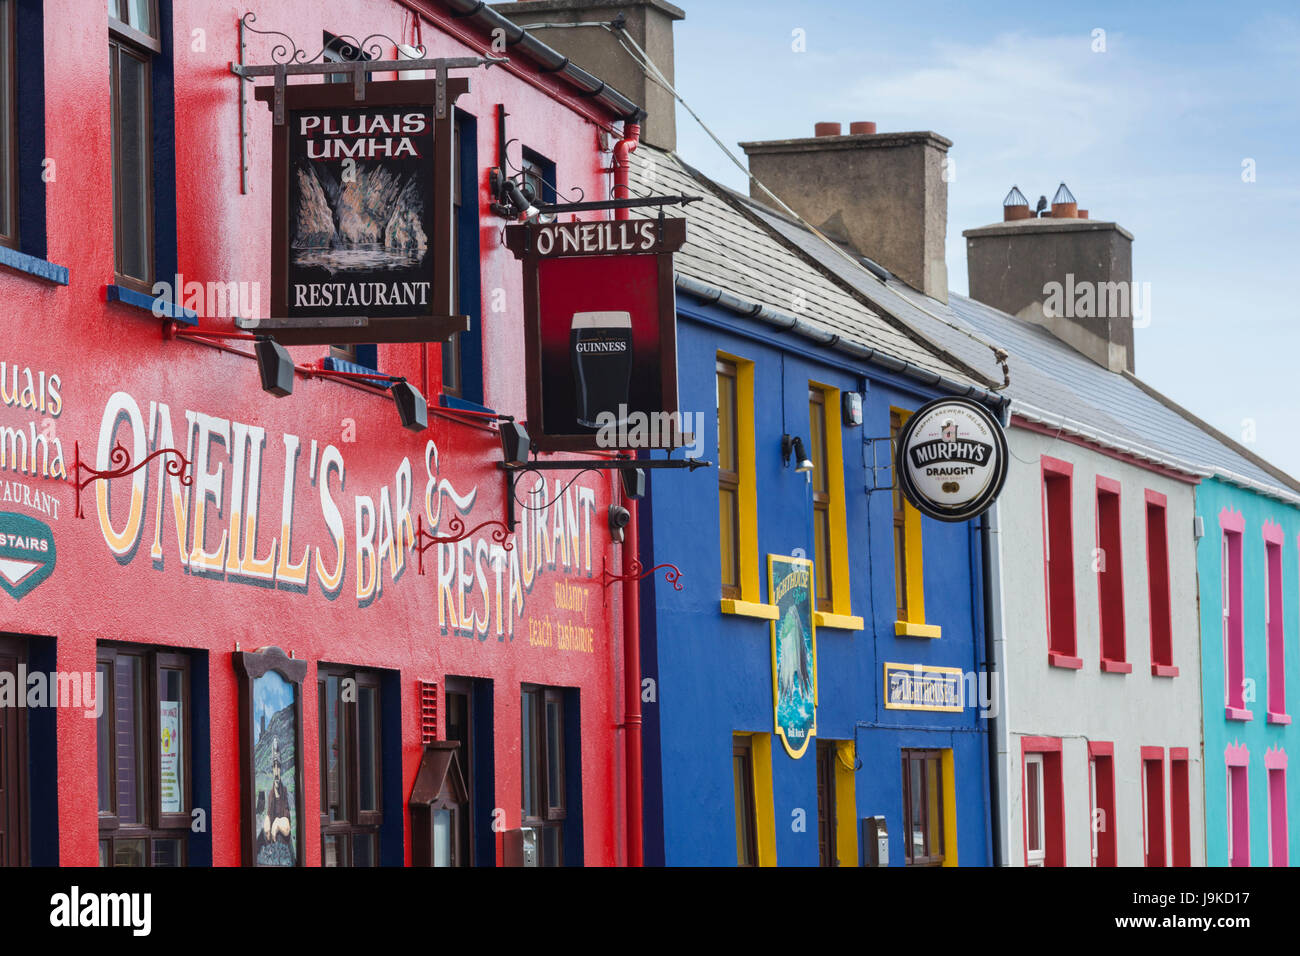 Ireland, County Cork, Beara Peninsula, Ring of Beara, Allihies, O'Neill's Pub, exterior Stock Photo